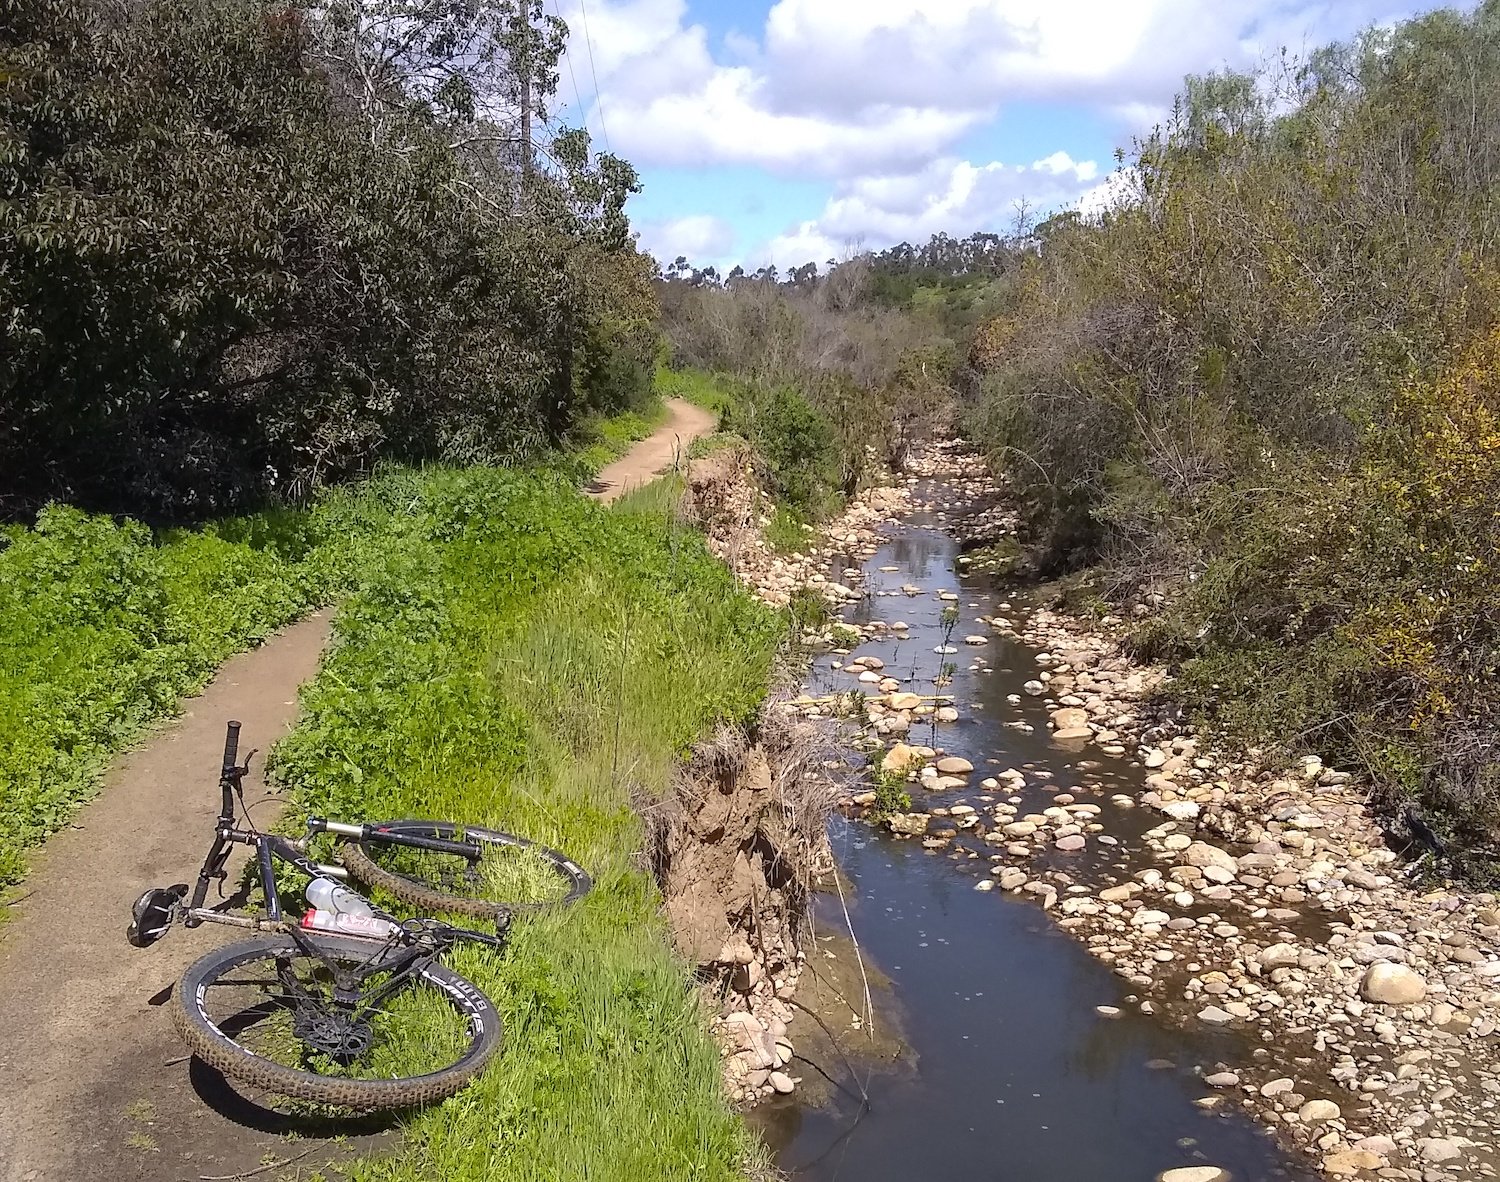 Try This Bike Trail: Balboa Parks’ Florida Canyon | San Diego Magazine